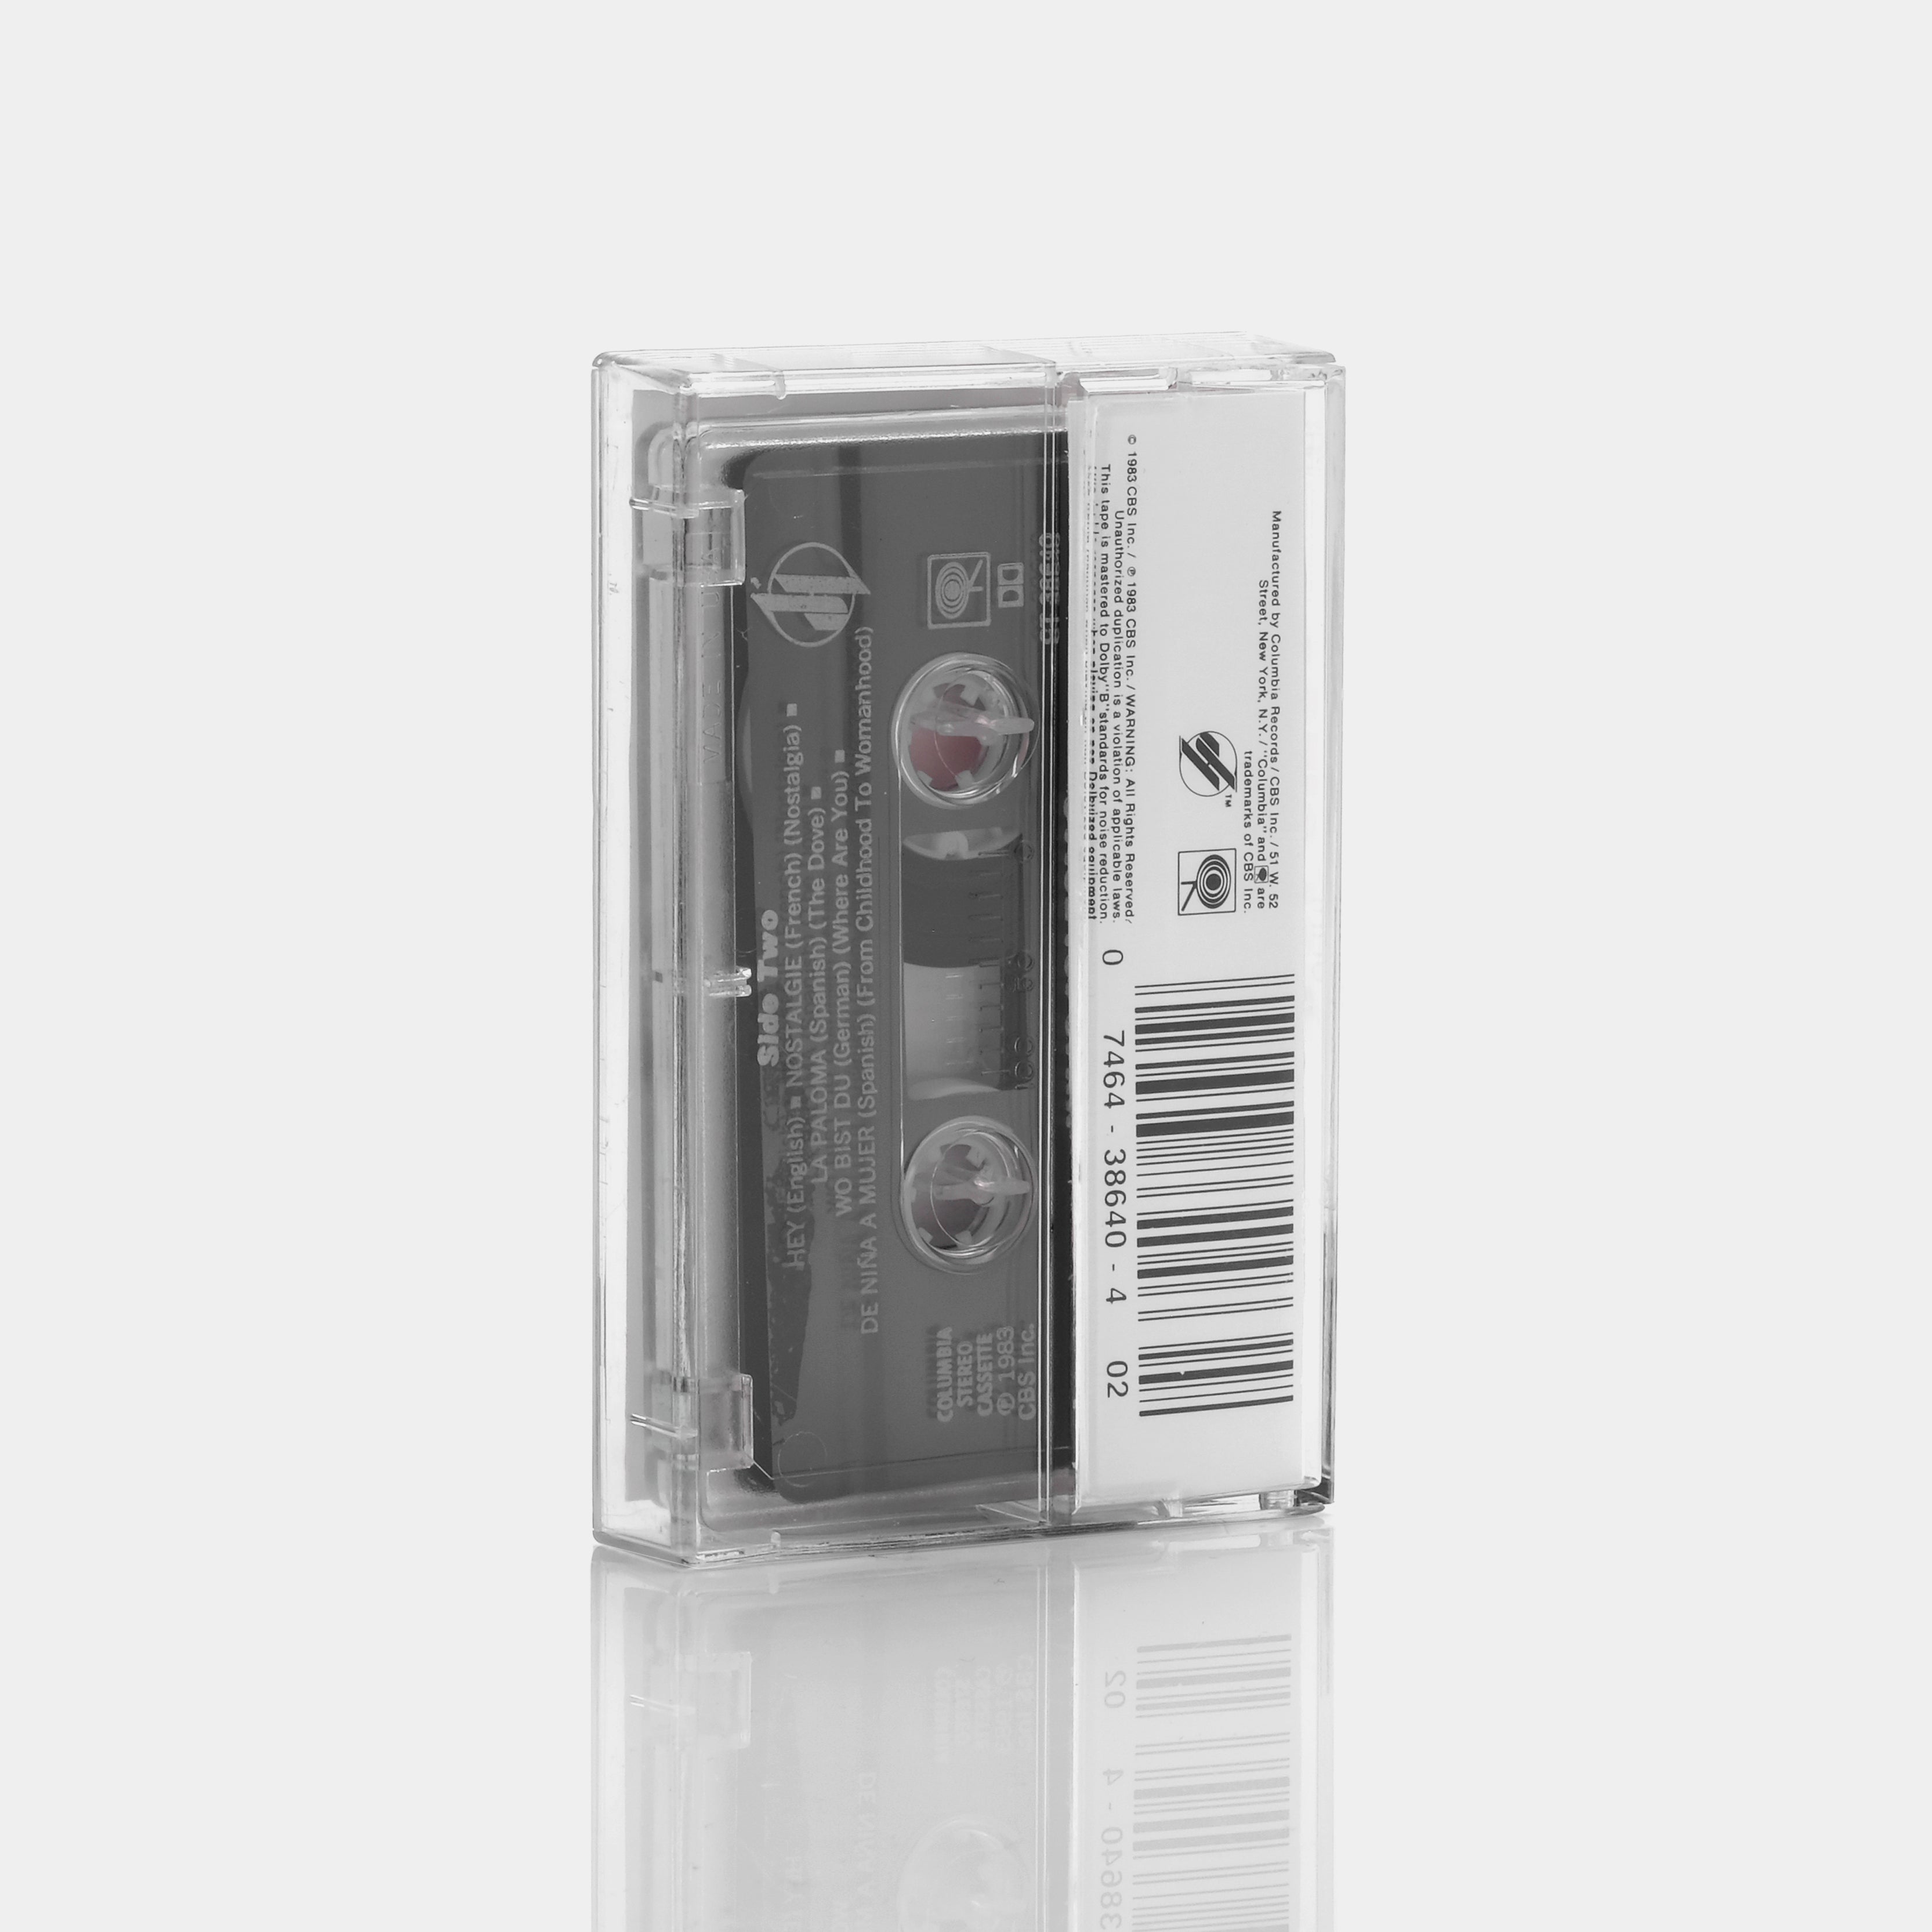 Julio Iglesias - Julio Cassette Tape